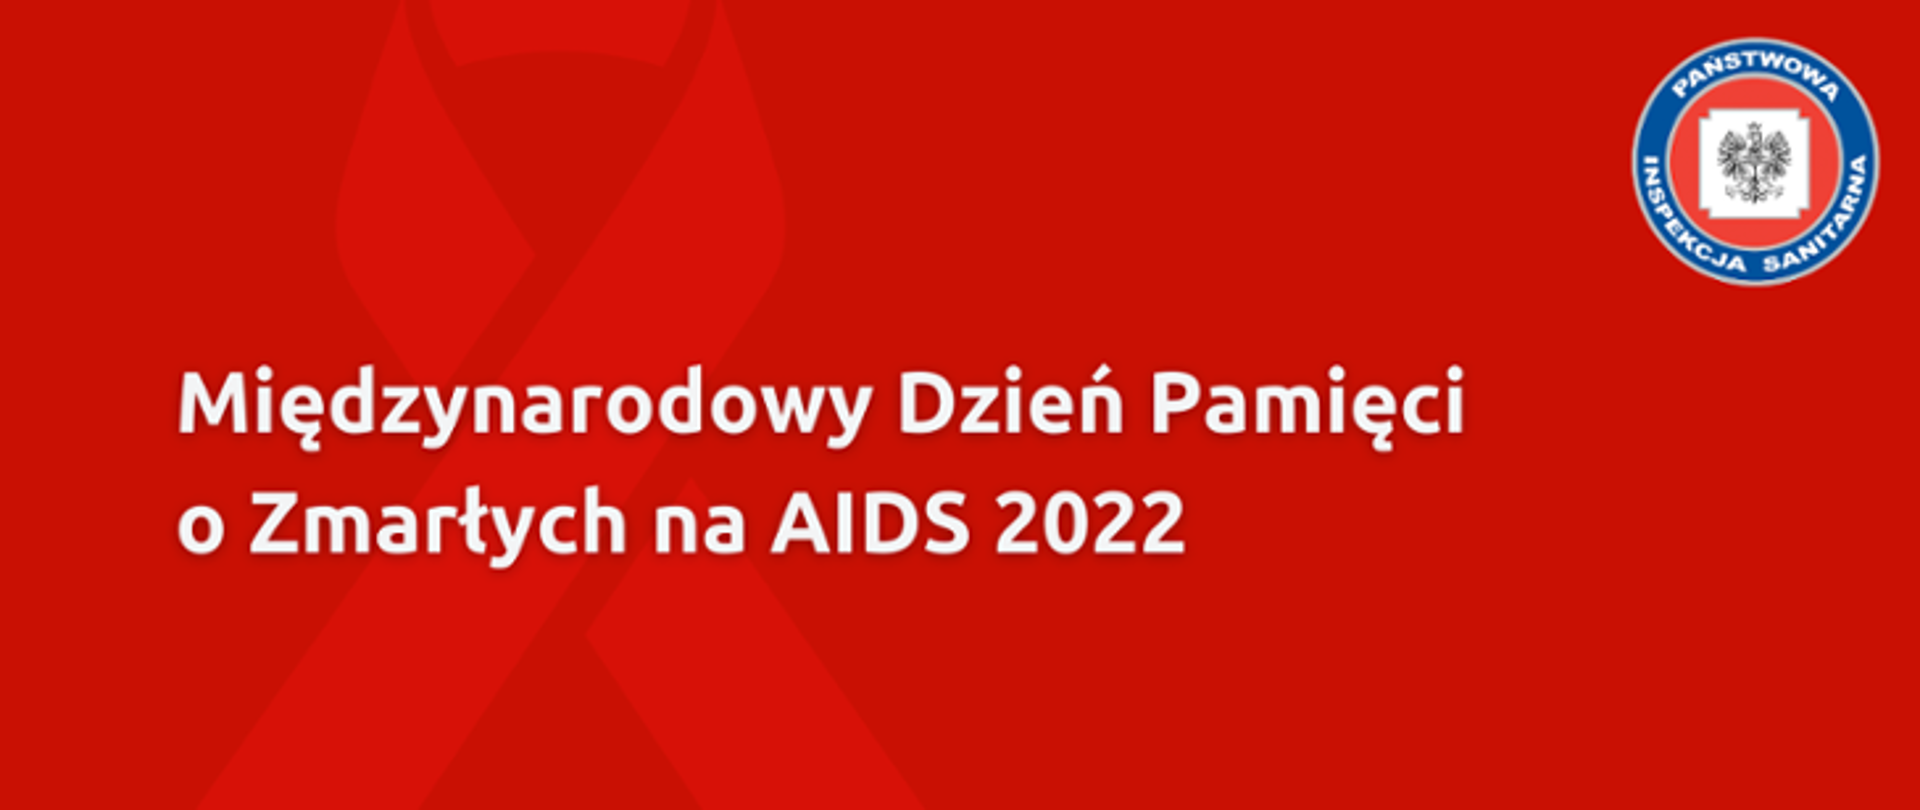 Międzynarodowy Dzień Pamięci o Zmarłych na AIDS 2022